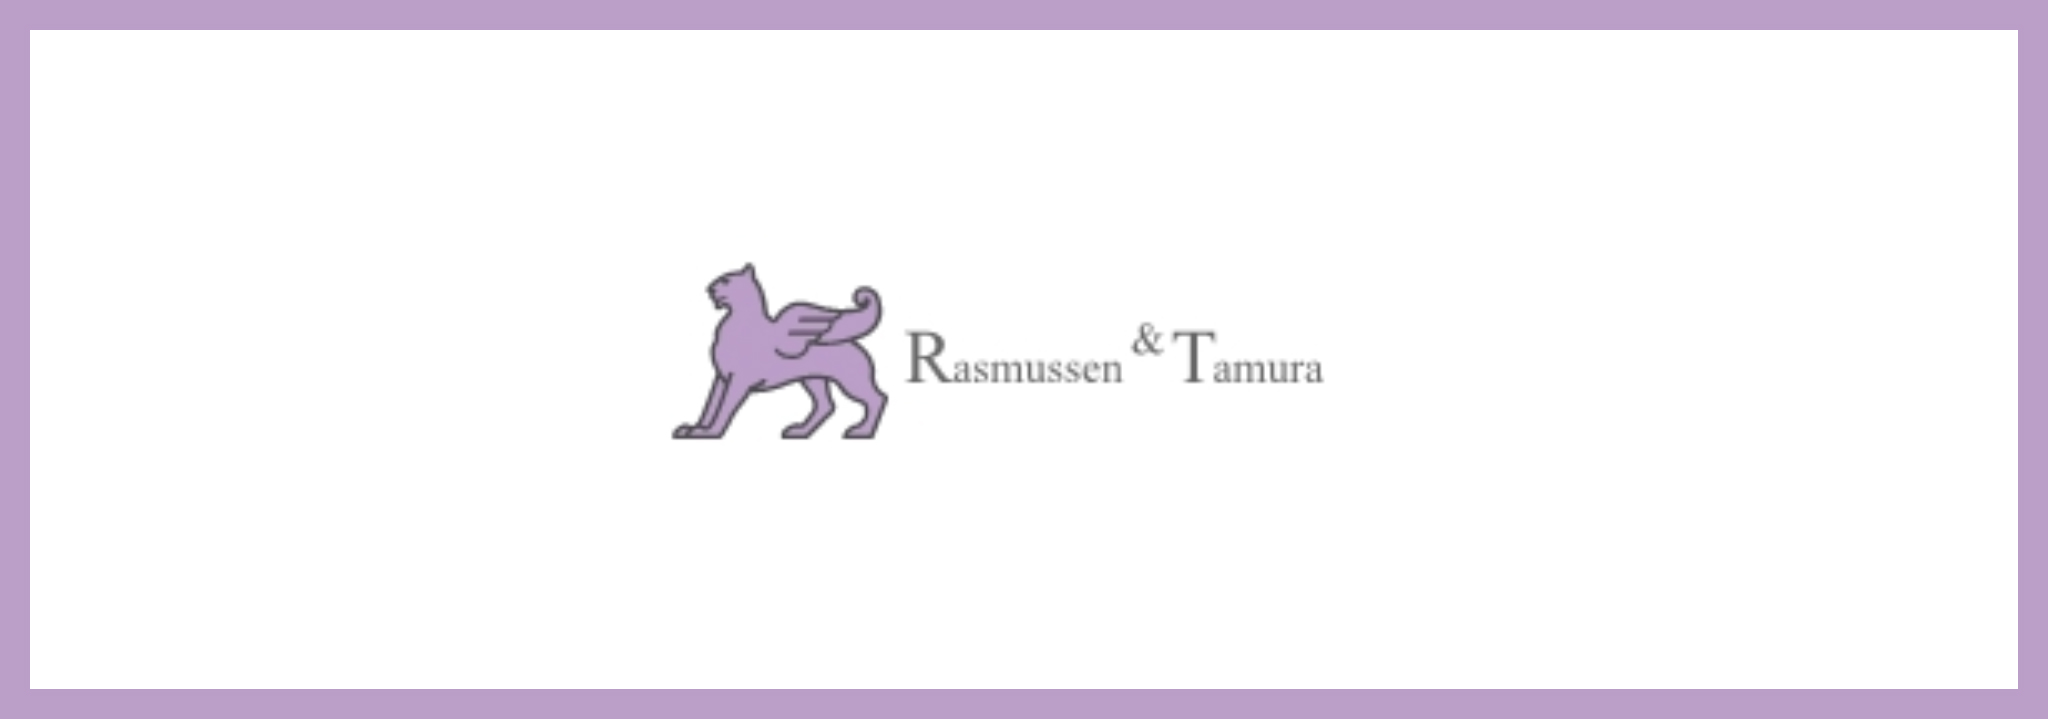 Rasmussen & Tamura